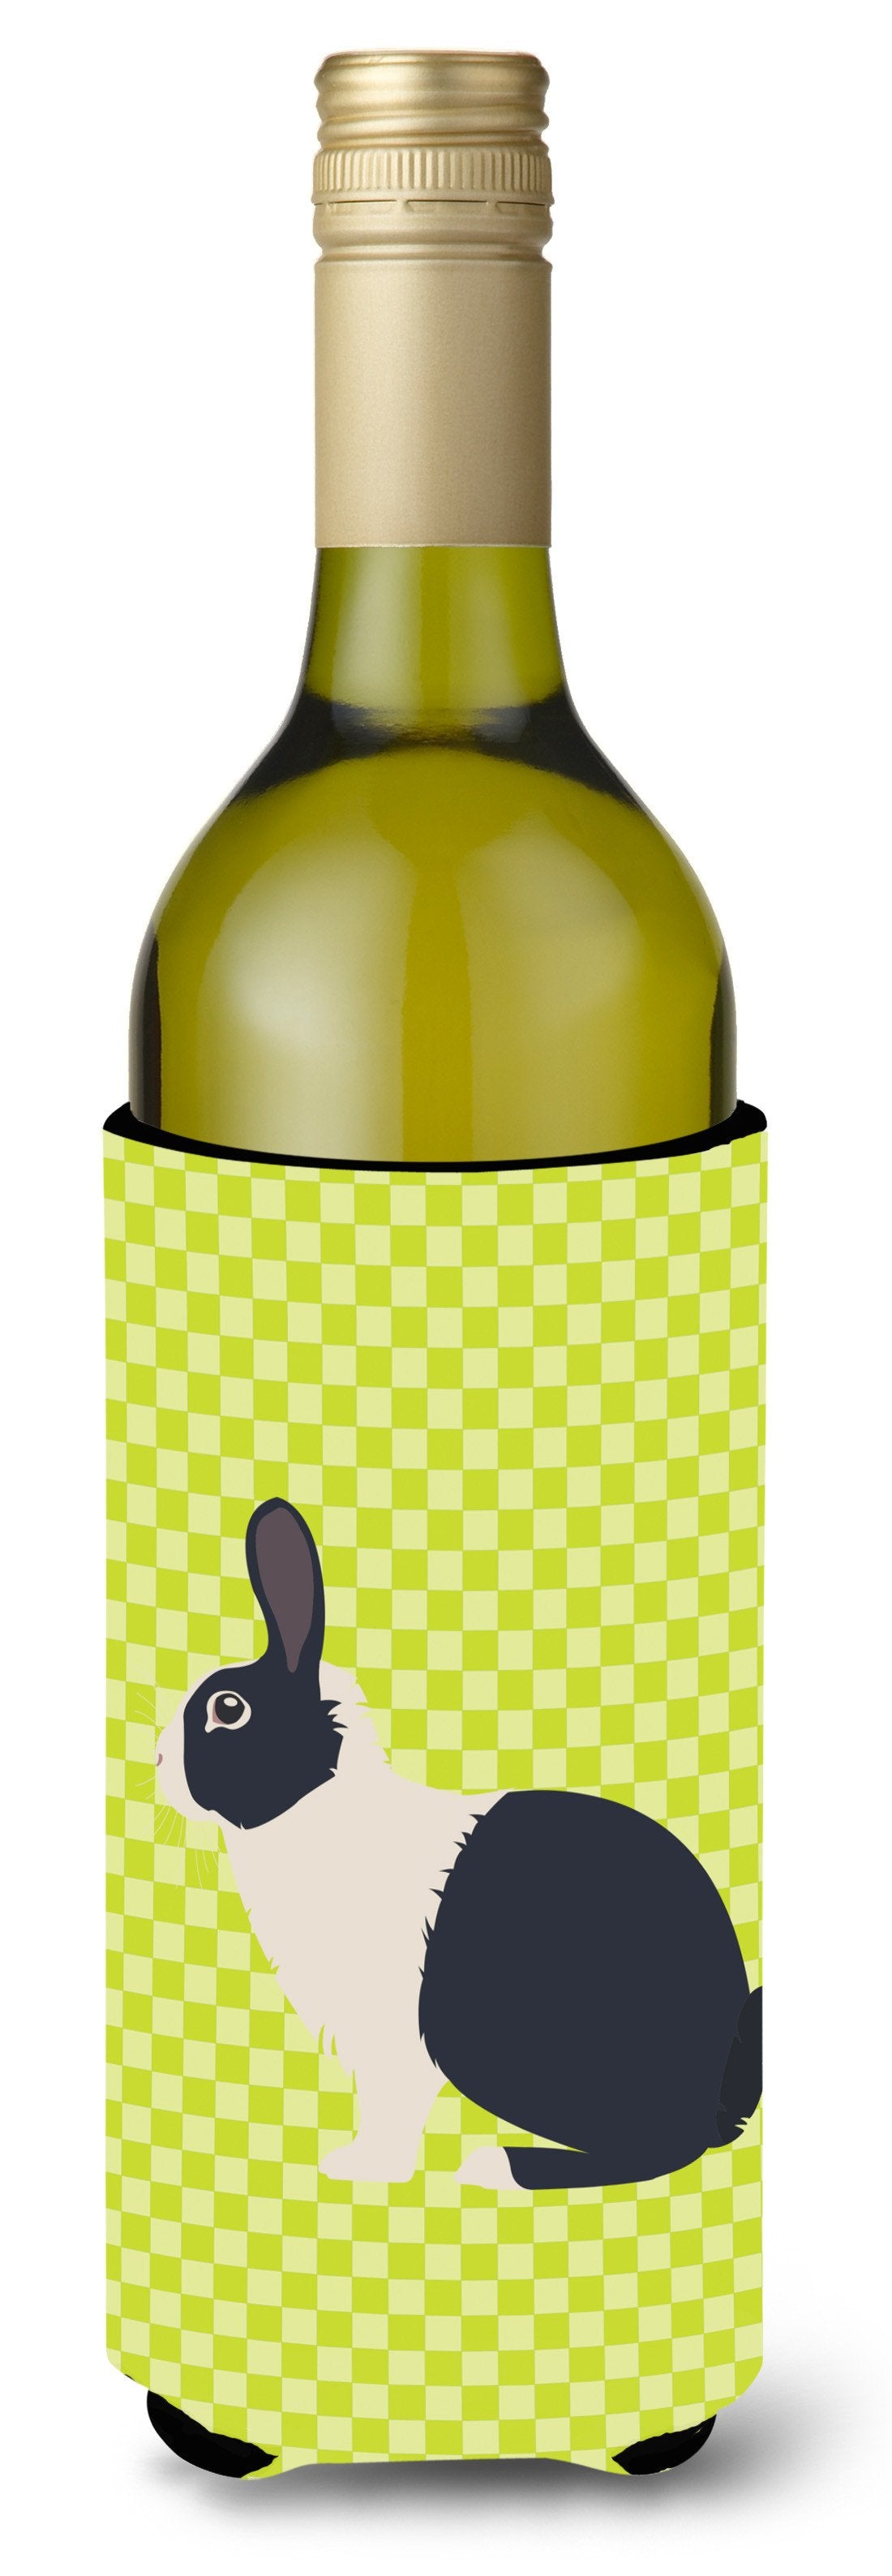 Dutch Rabbit Green Wine Bottle Beverge Insulator Hugger BB7784LITERK by Caroline's Treasures